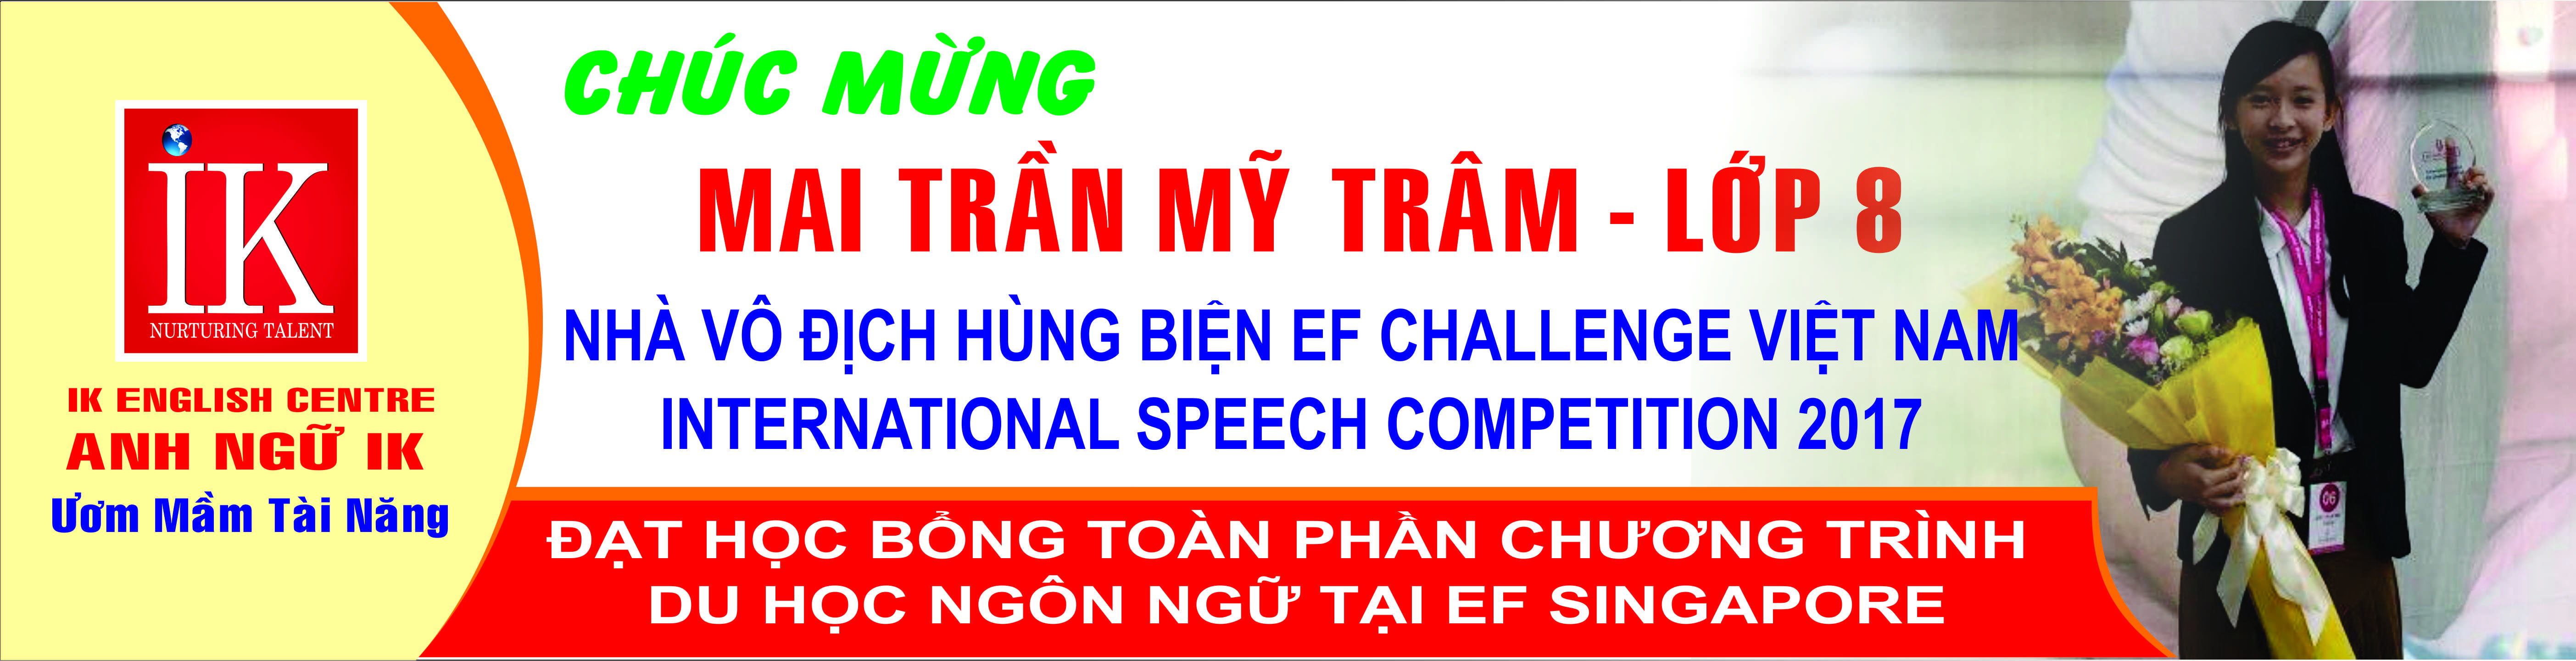 Chúc mừng nhà vô địch hùng biện EF Challenge - International Speech Competition 2017 - Mai Trần Mỹ Trâm